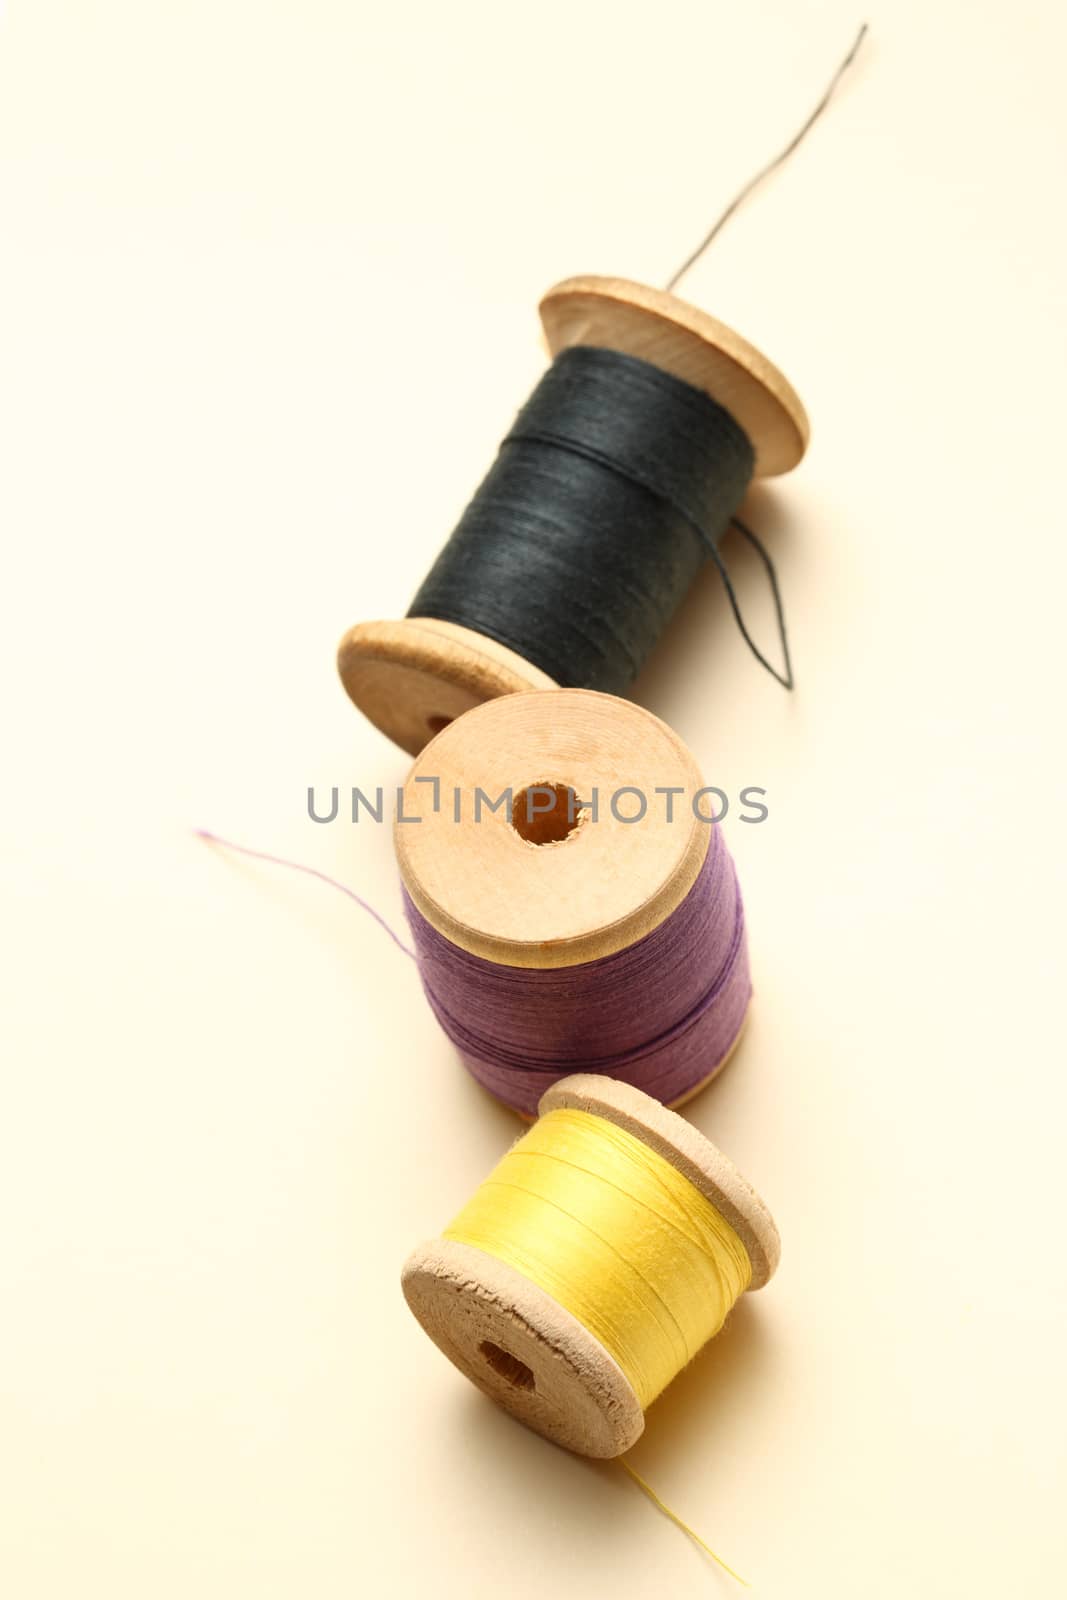 Three thread bobbins in closeup by Garsya